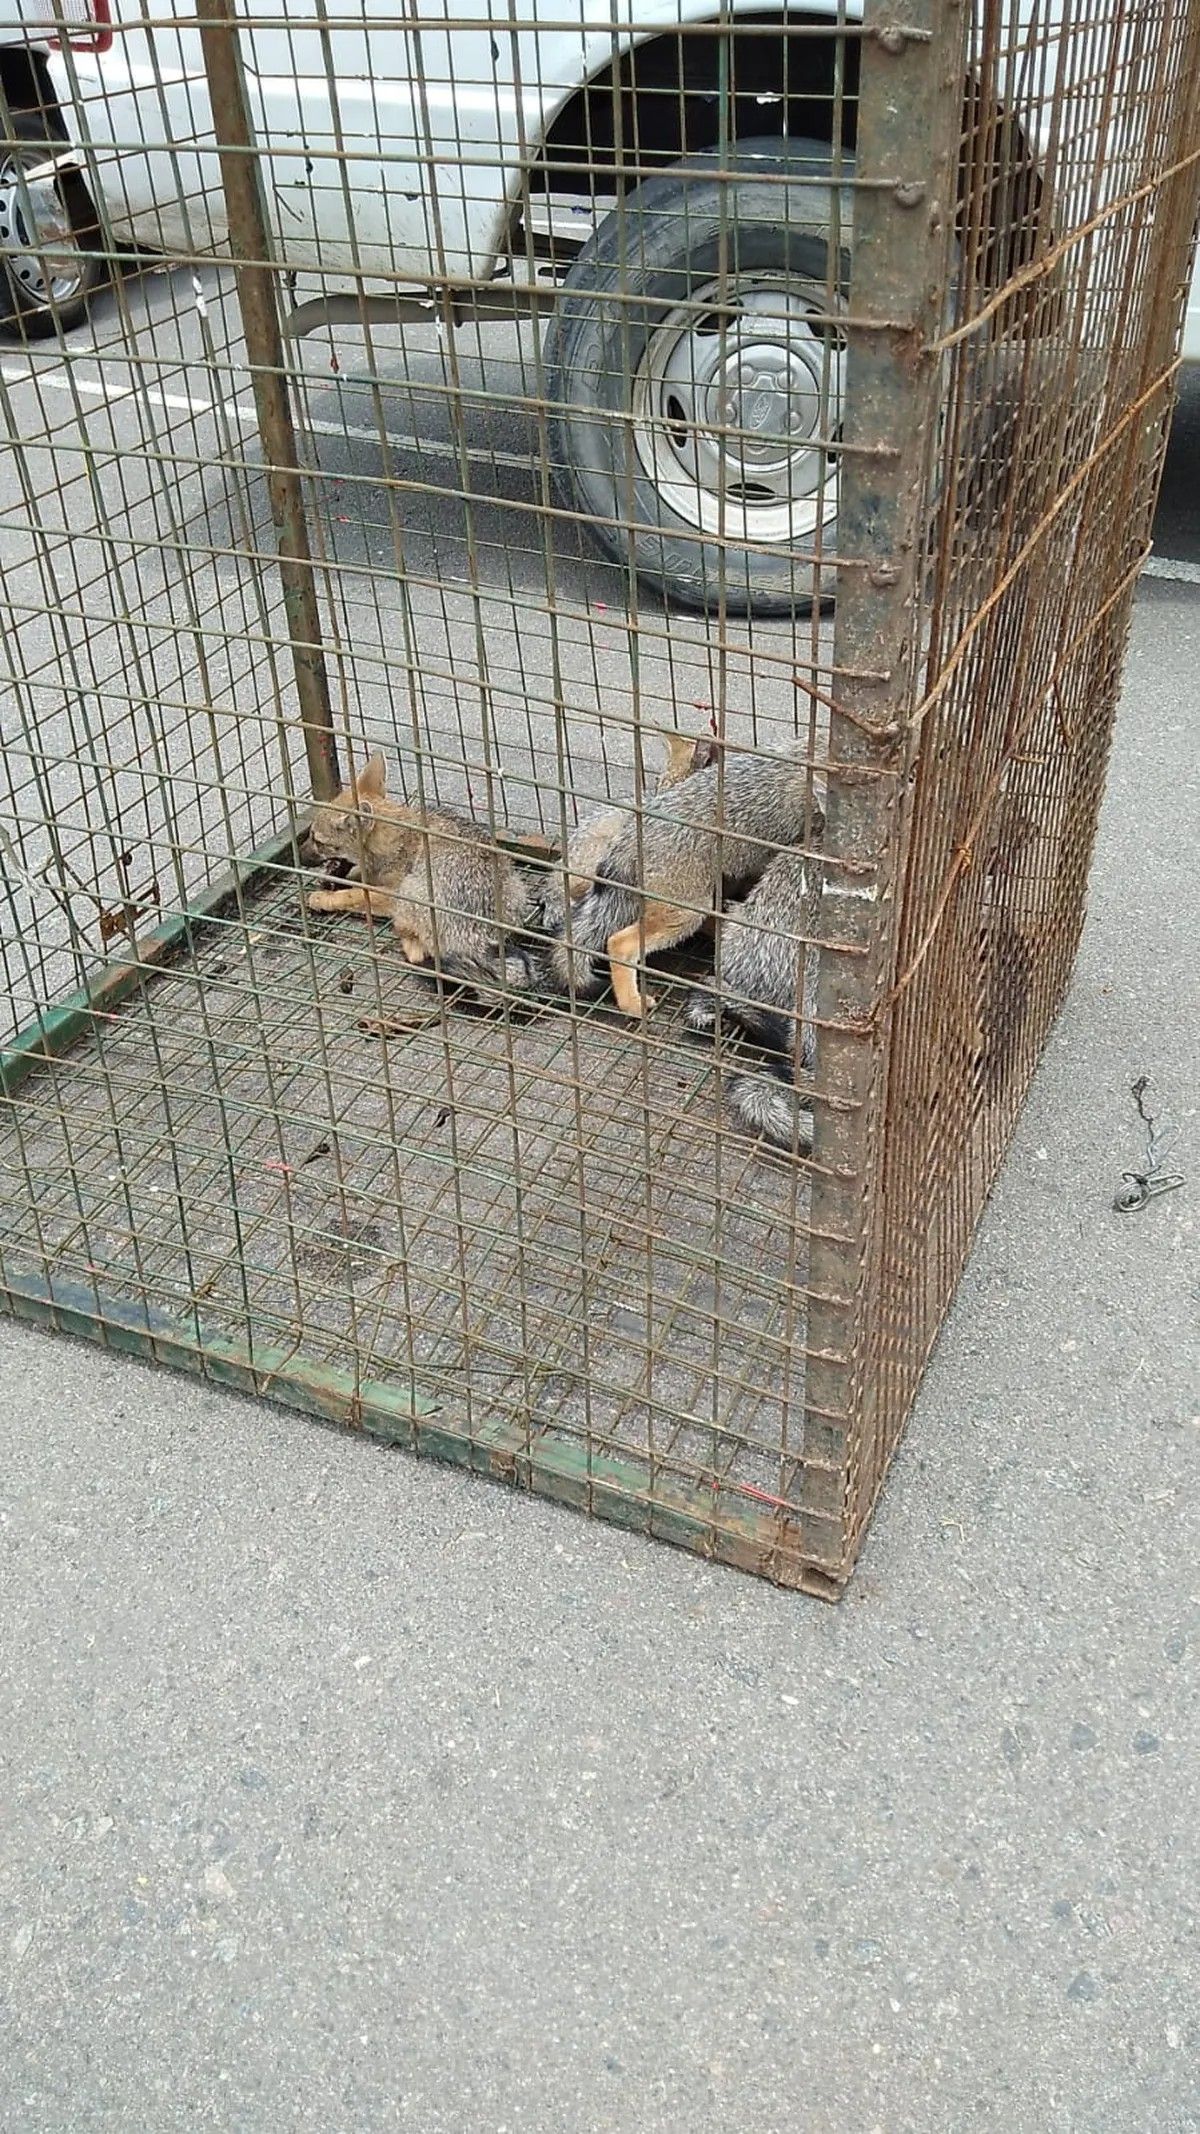 La familia de zorros que fue rescatada en 2021, en El Sosiego de Canning.